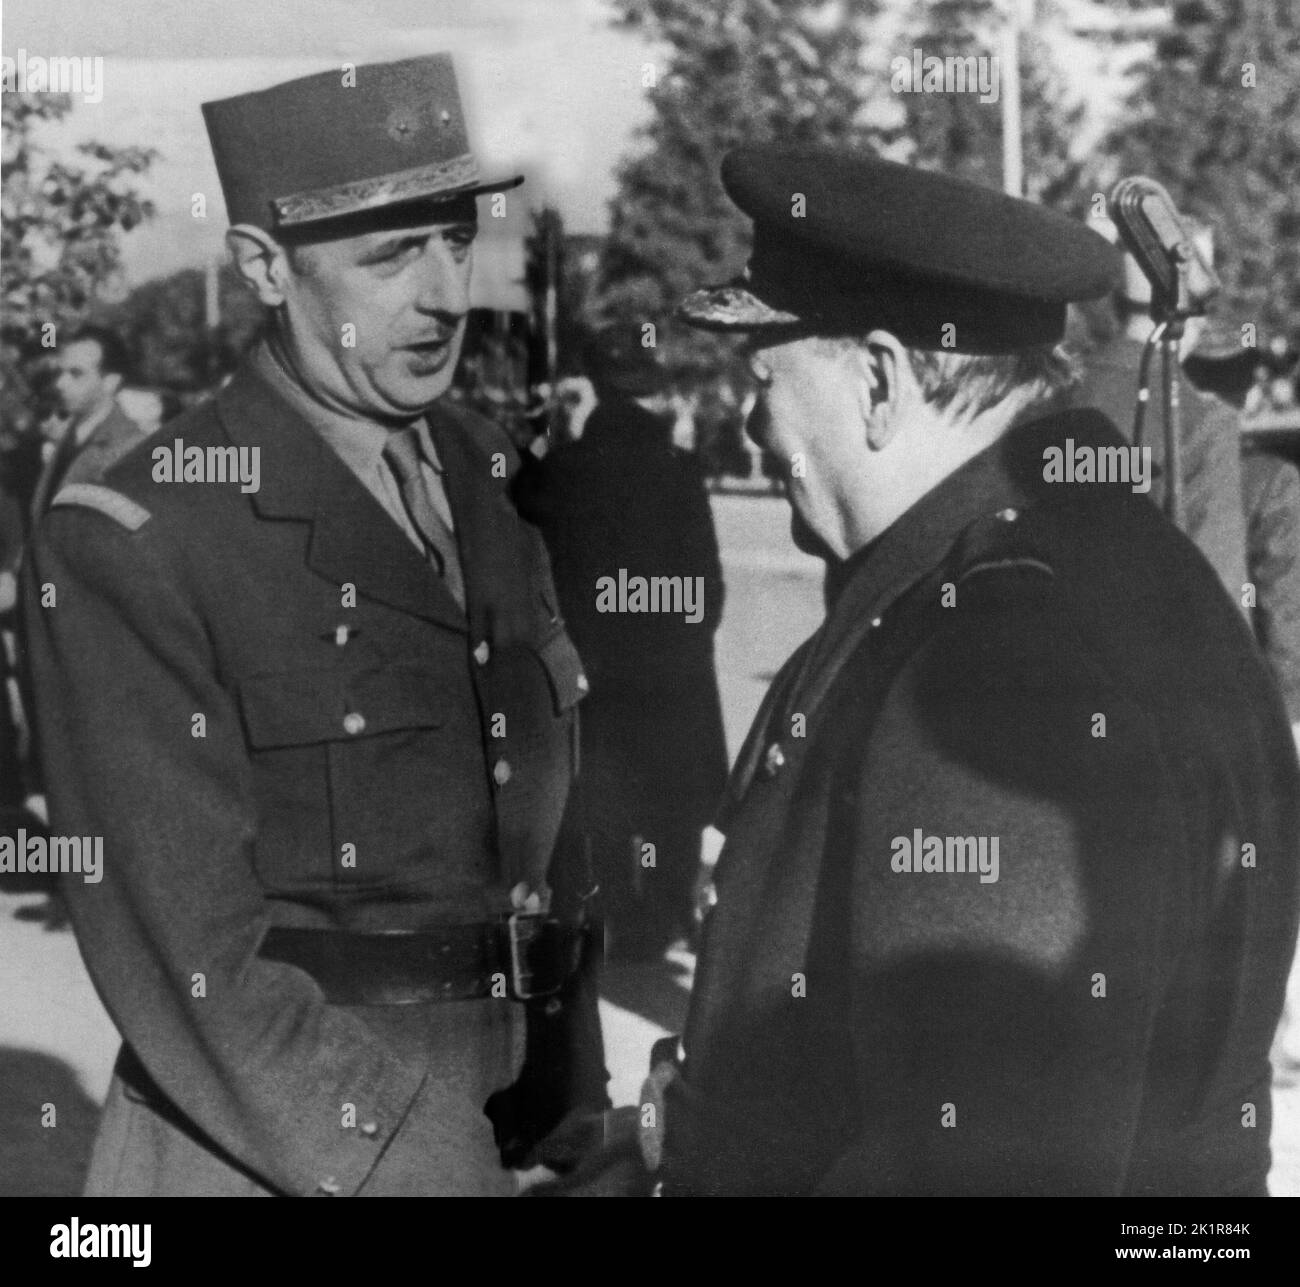 1944 del fotografías e imágenes de alta resolución - Página 7 - Alamy